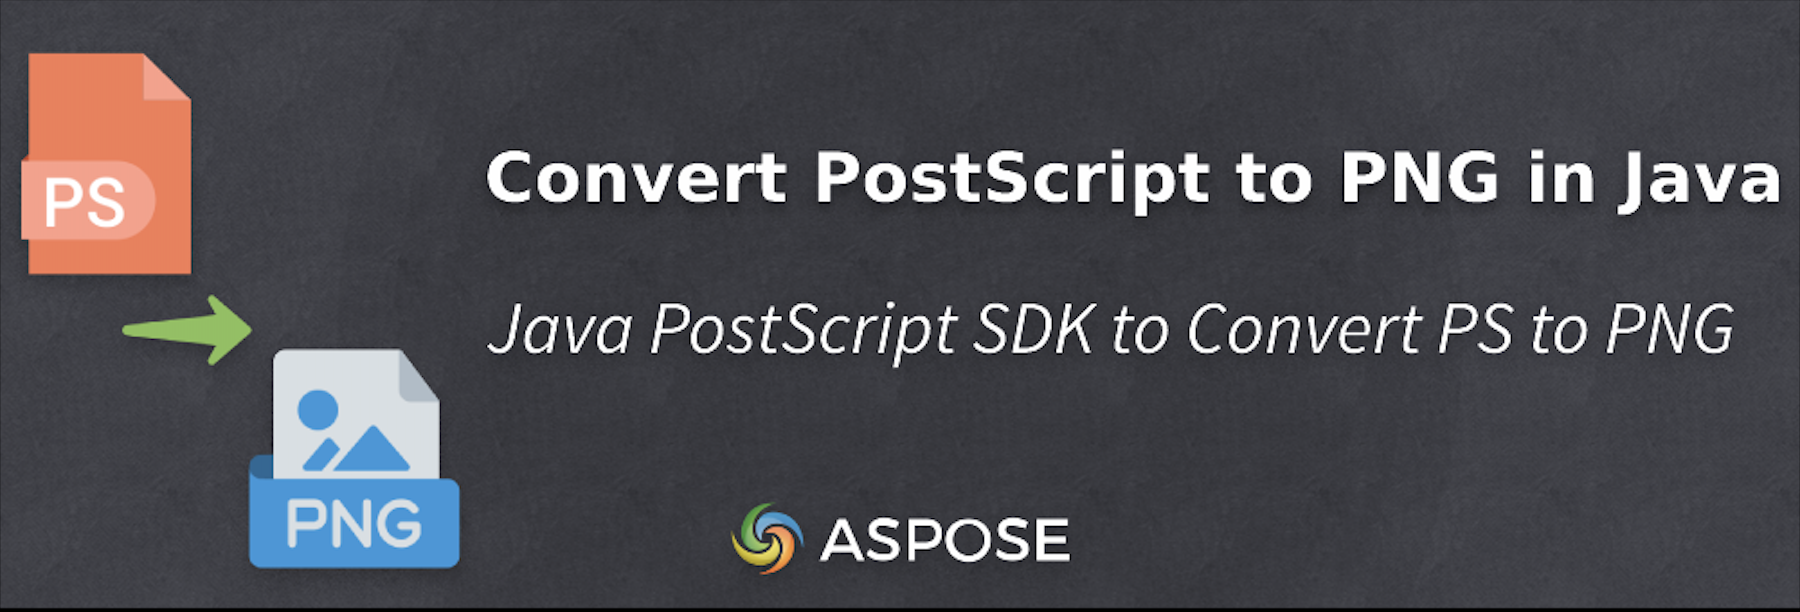 Convert PostScript to PNG in Java